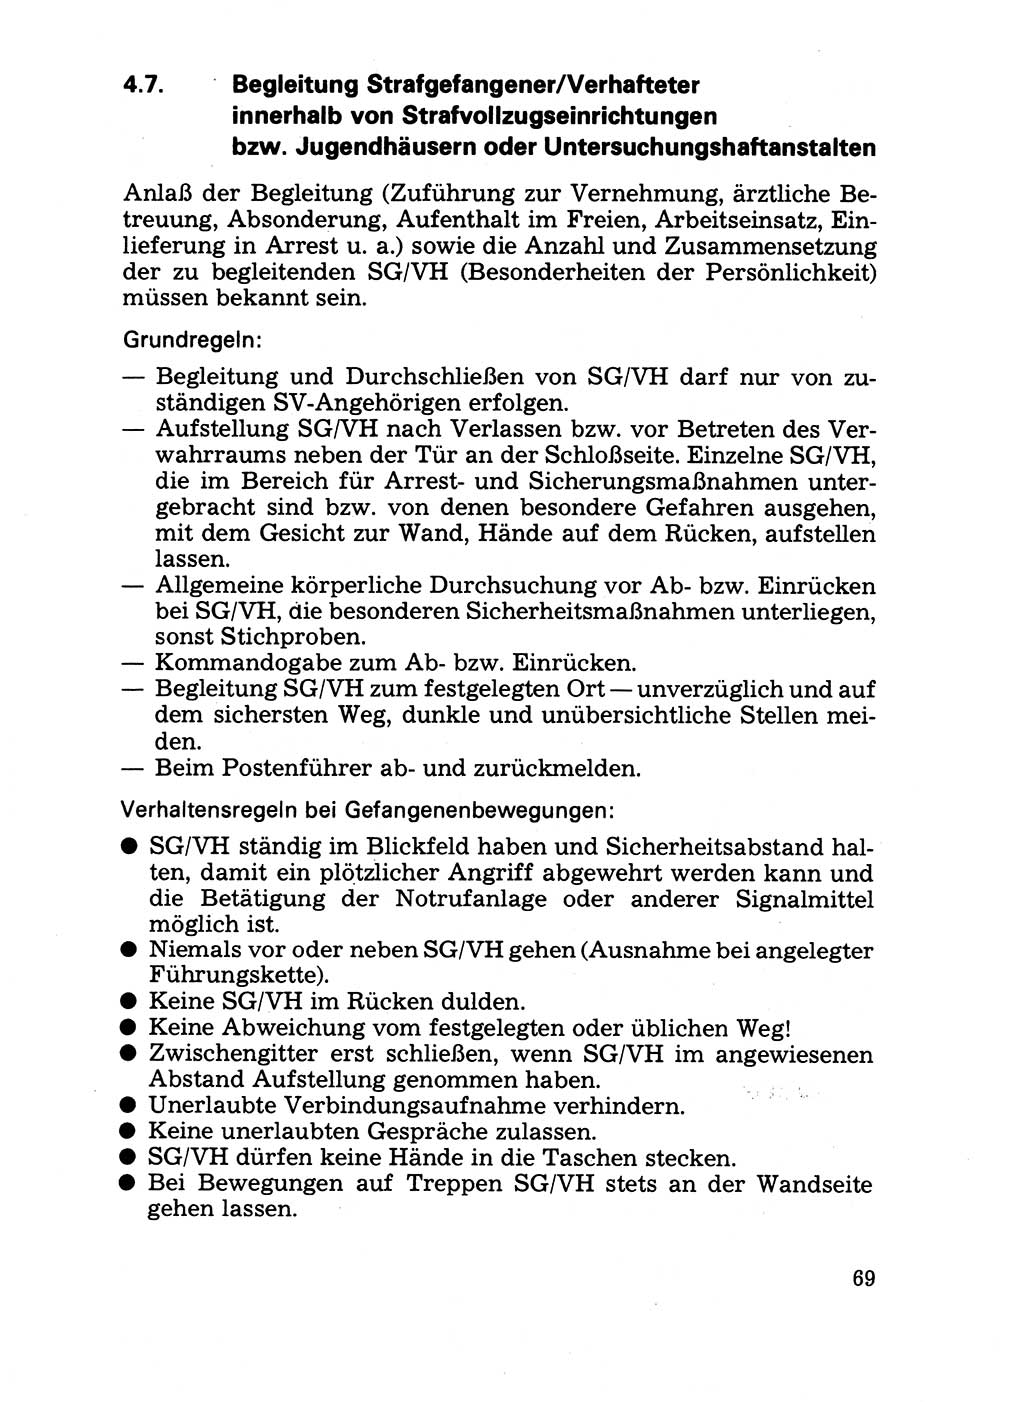 Handbuch für operative Dienste, Abteilung Strafvollzug (SV) [Ministerium des Innern (MdI) Deutsche Demokratische Republik (DDR)] 1981, Seite 69 (Hb. op. D. Abt. SV MdI DDR 1981, S. 69)